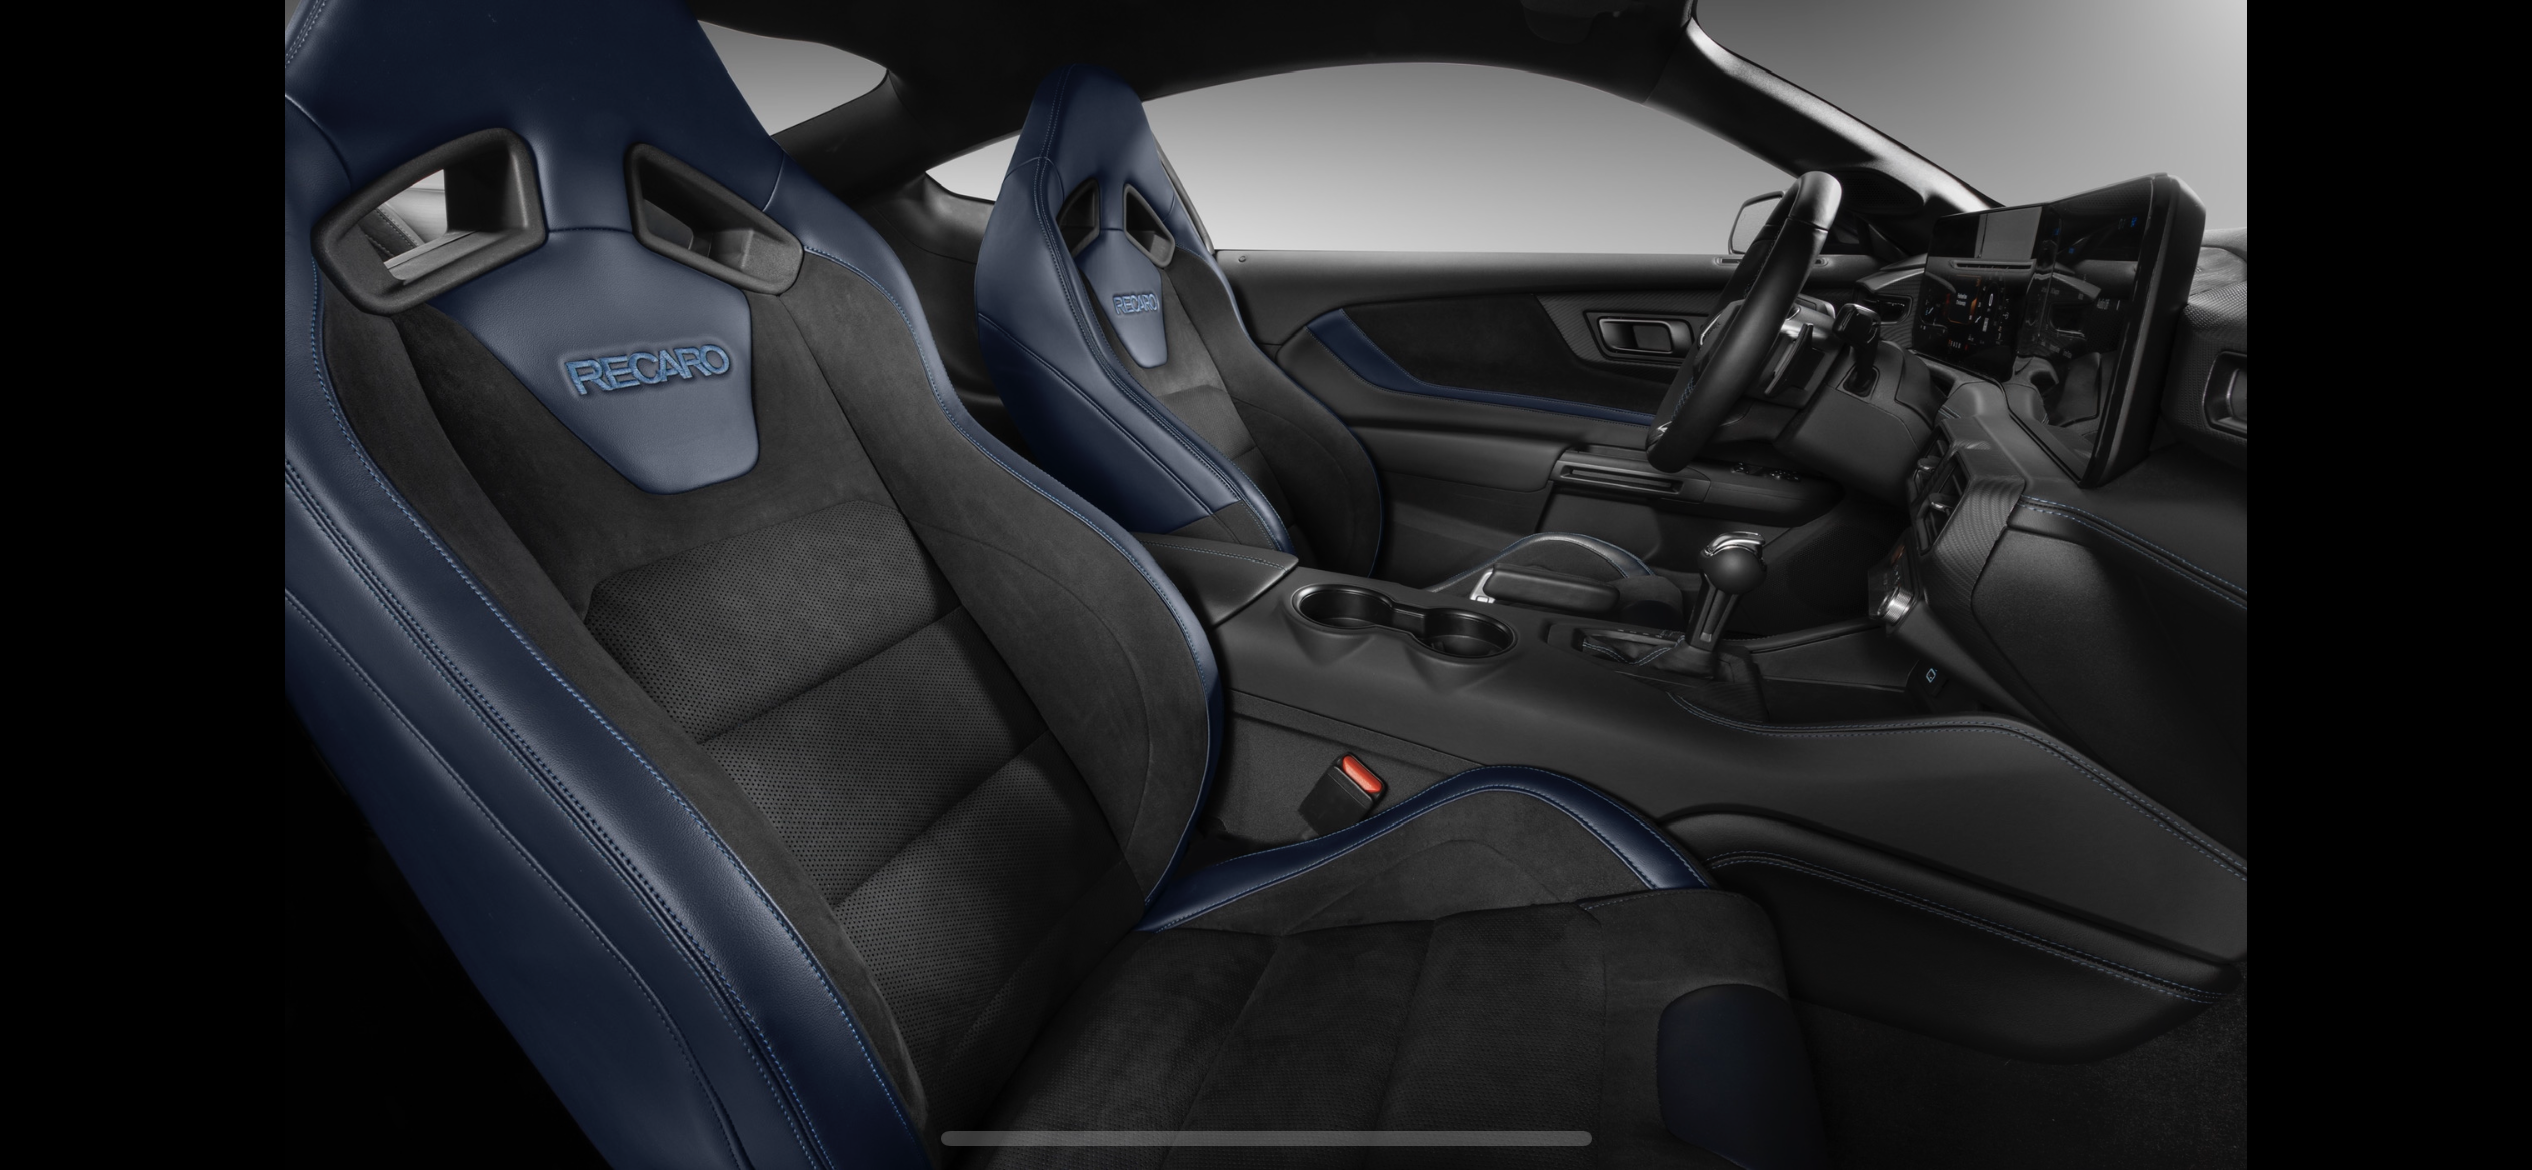 S650 Mustang Seat options D30E7C23-88D9-4C1A-8723-E1E0B4B1042F